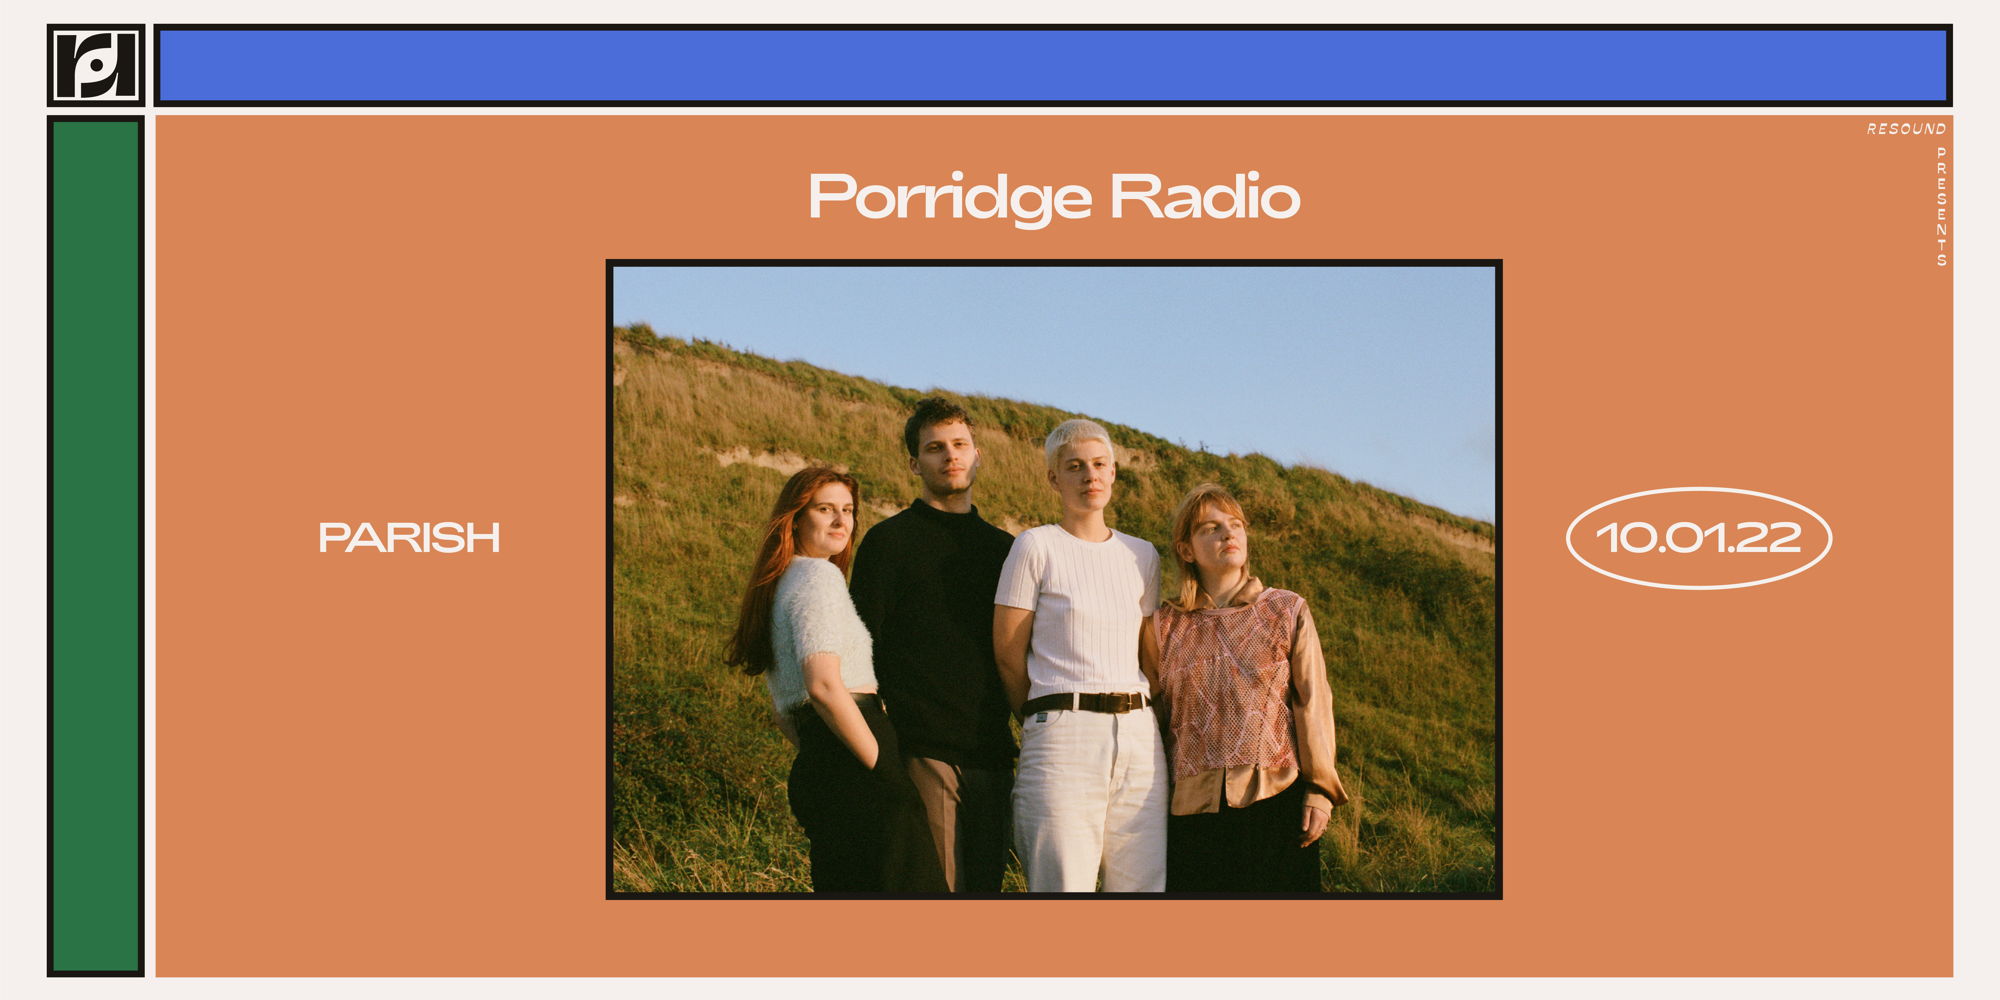 Porridge Radio at Parish 10/1 promotional image